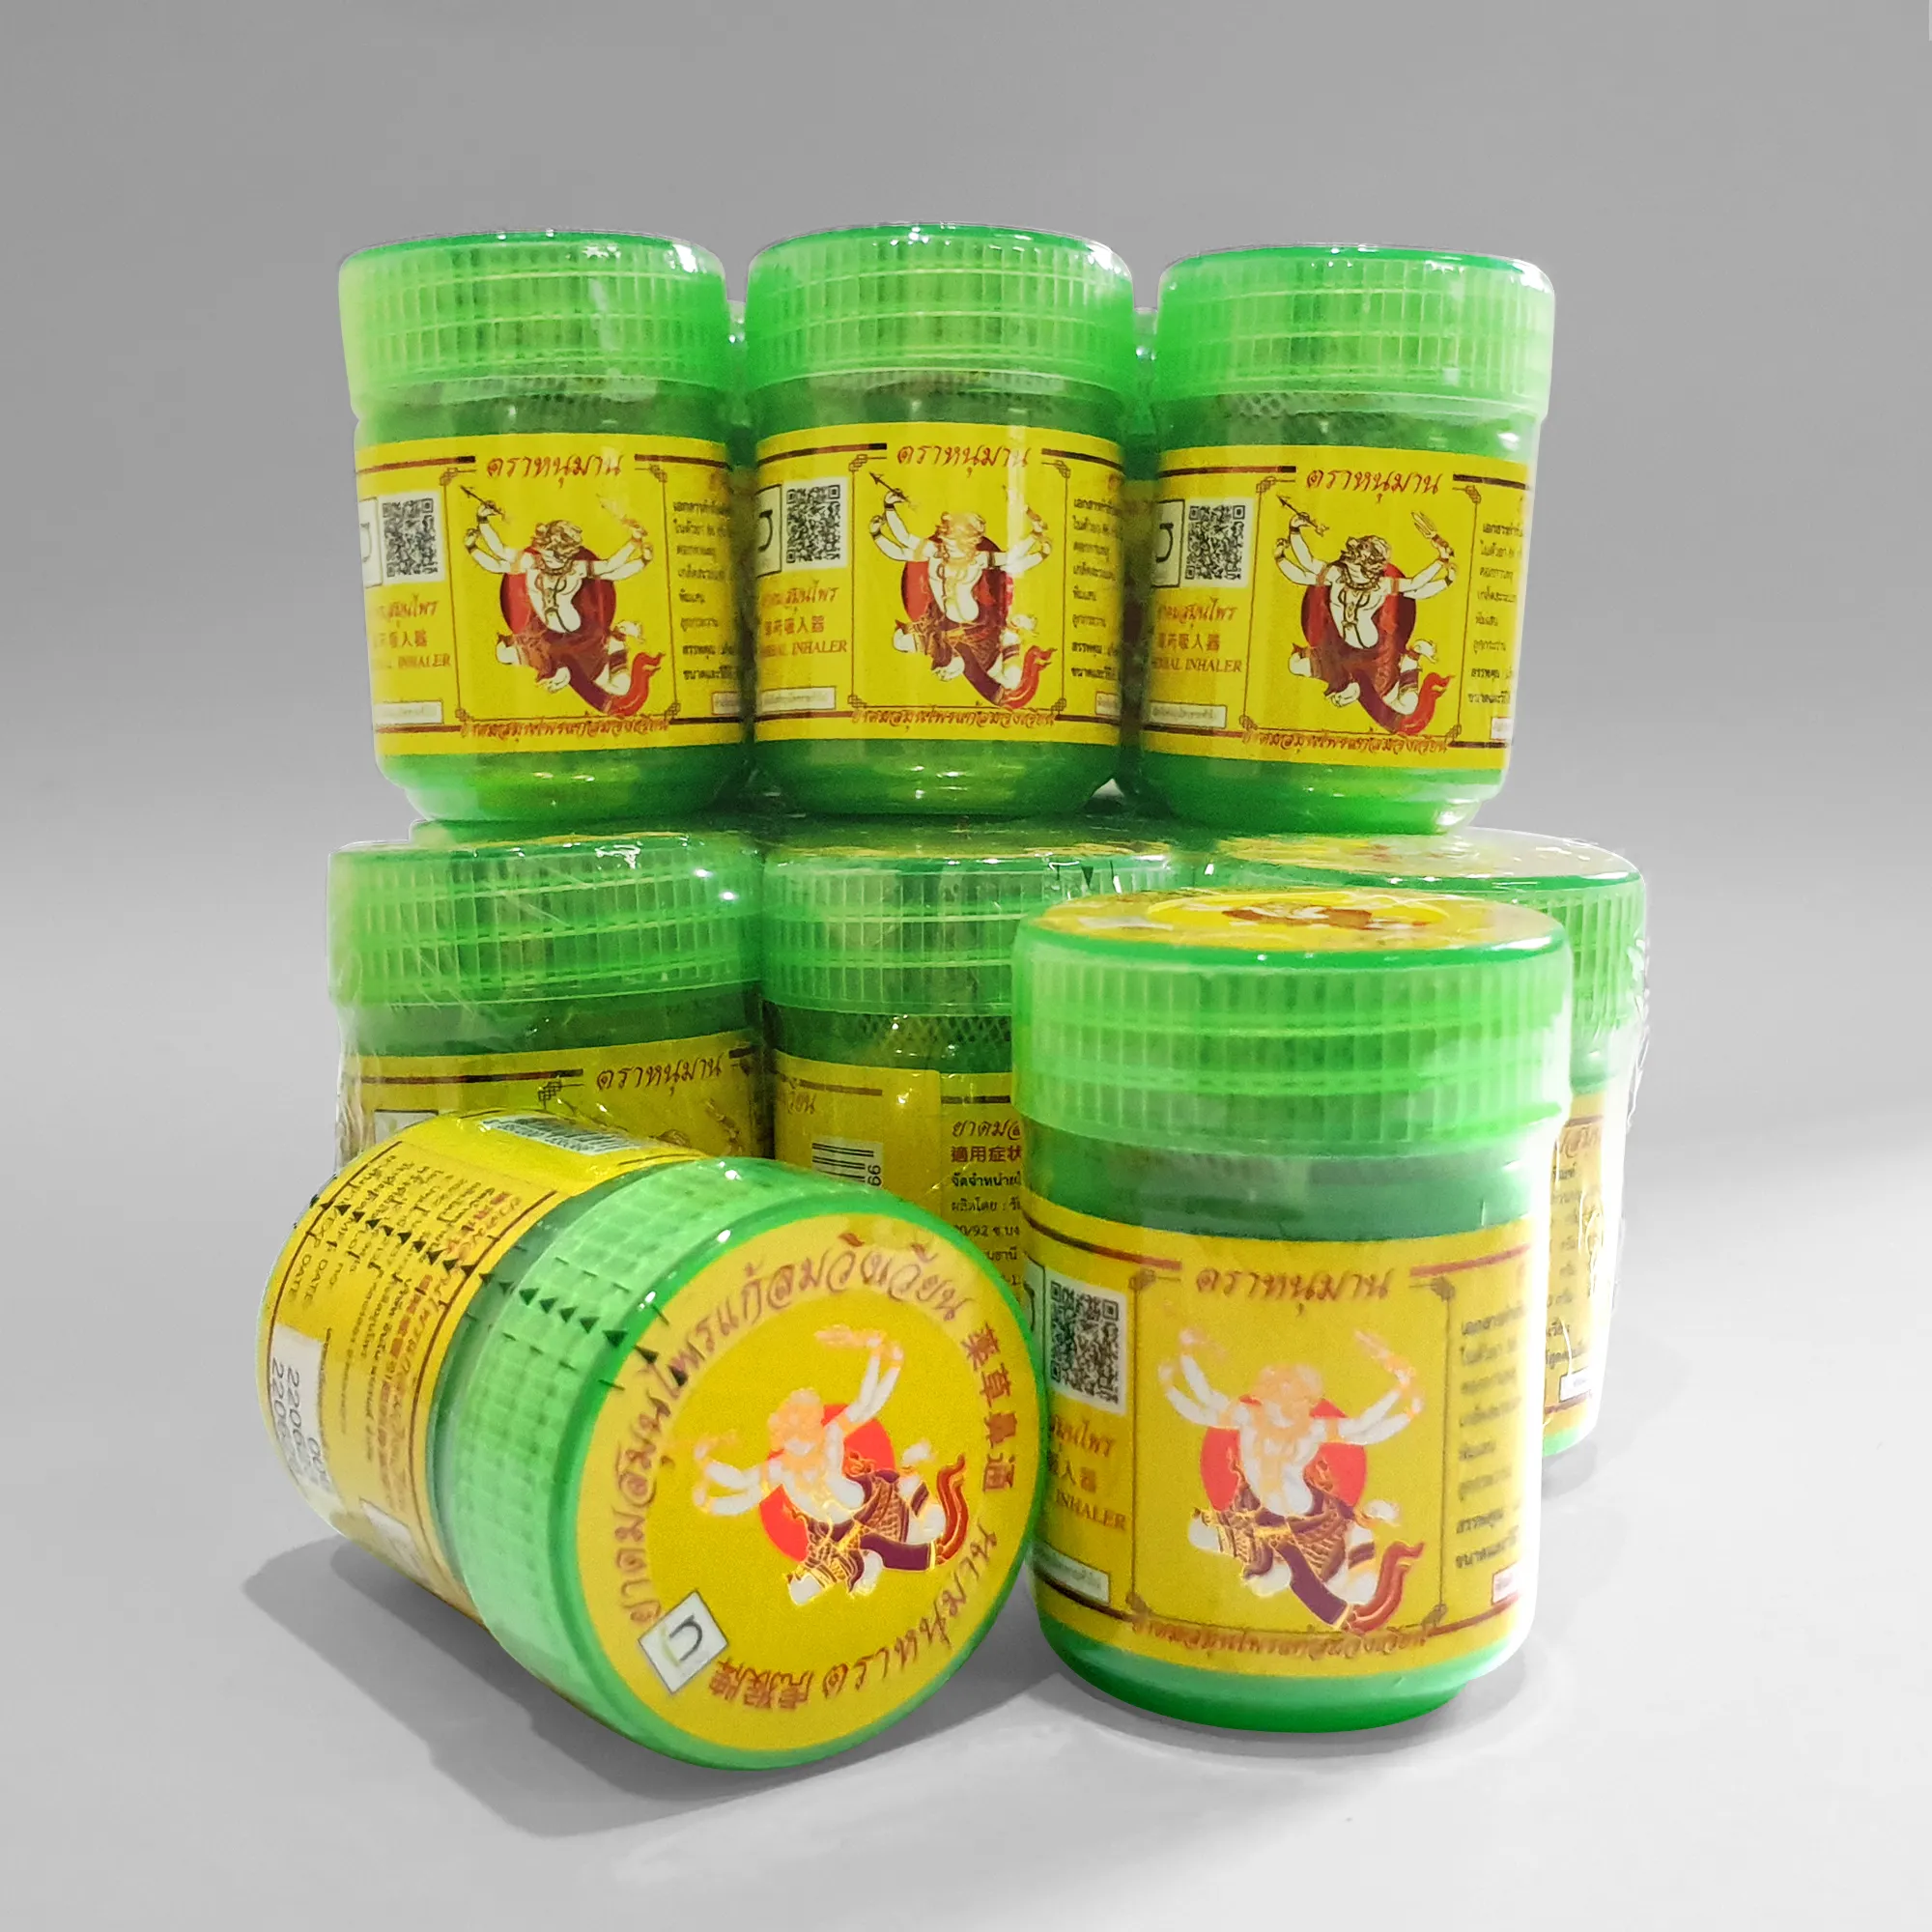 Hanumann merek ramuan Inhaler produk organik suplemen kesehatan penyebar Aroma produk terlaris dari Thailand